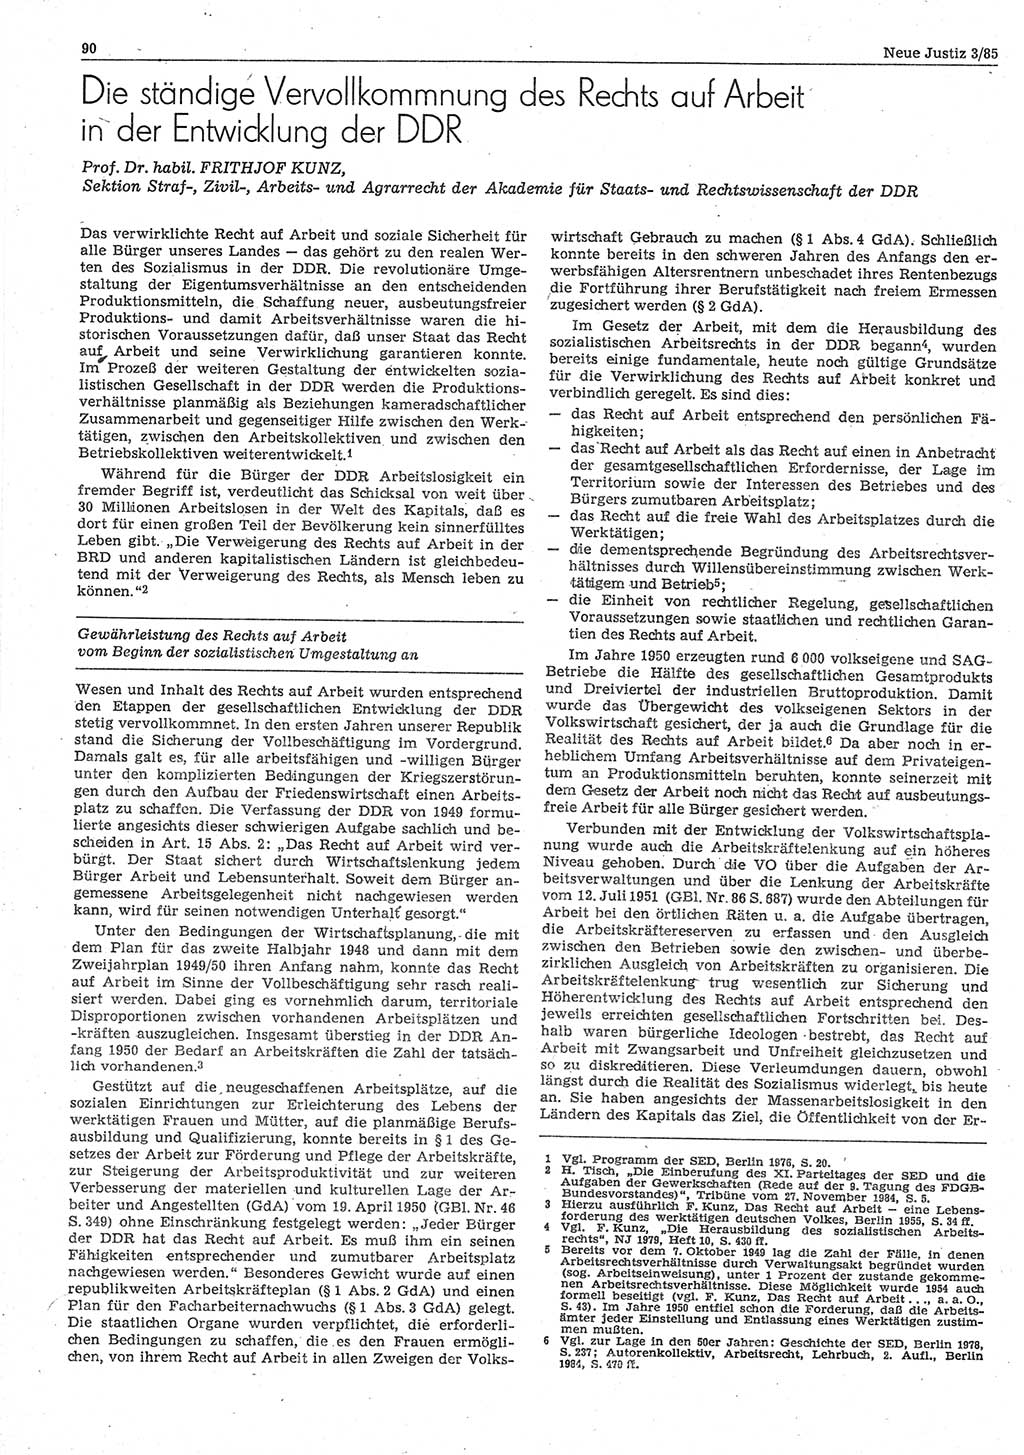 Neue Justiz (NJ), Zeitschrift für sozialistisches Recht und Gesetzlichkeit [Deutsche Demokratische Republik (DDR)], 39. Jahrgang 1985, Seite 90 (NJ DDR 1985, S. 90)